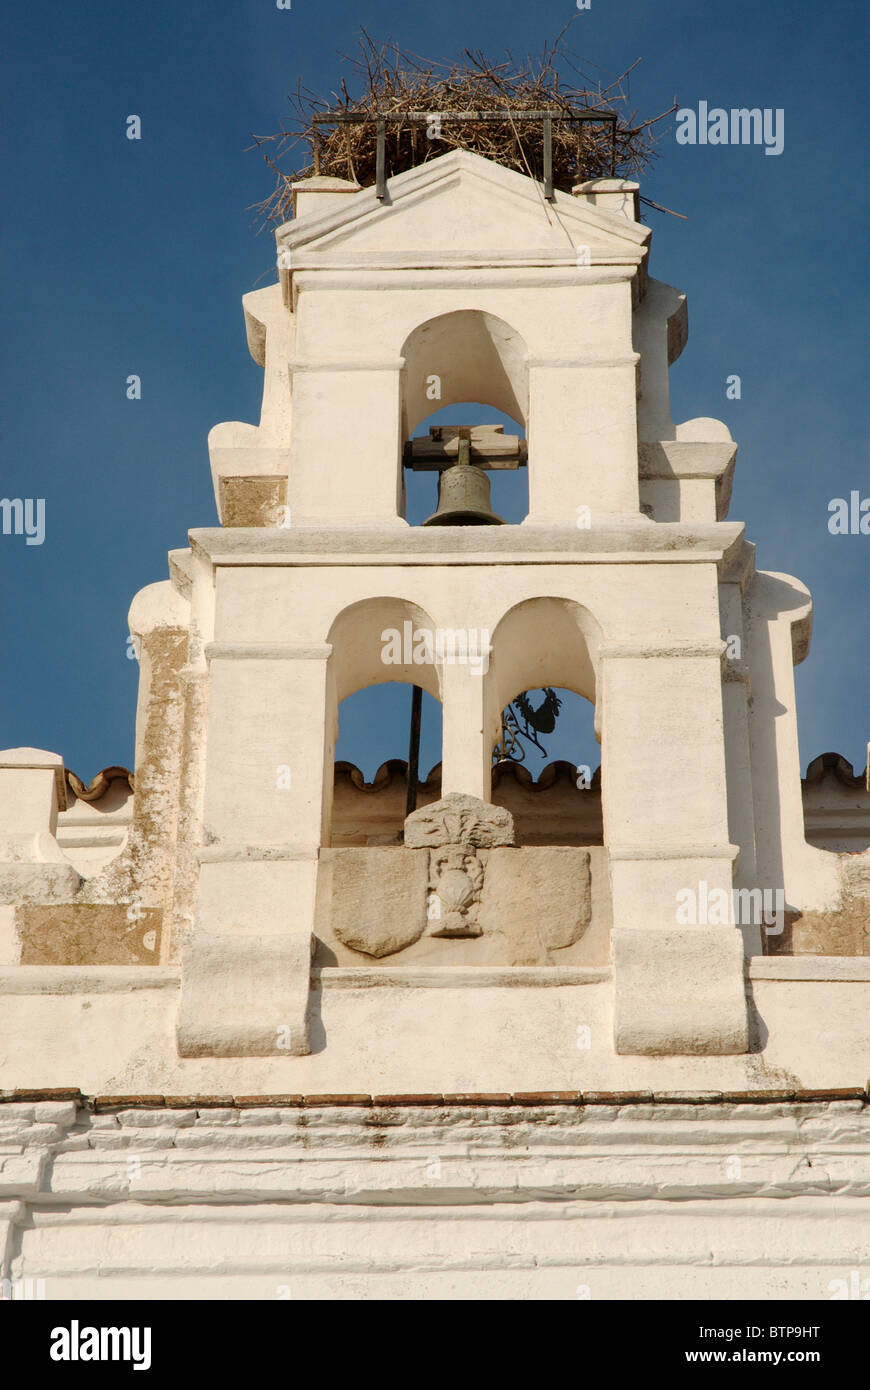 Spagna Estremadura, Caceres a Jerez de los Caballeros, vista della campana della chiesa Foto Stock